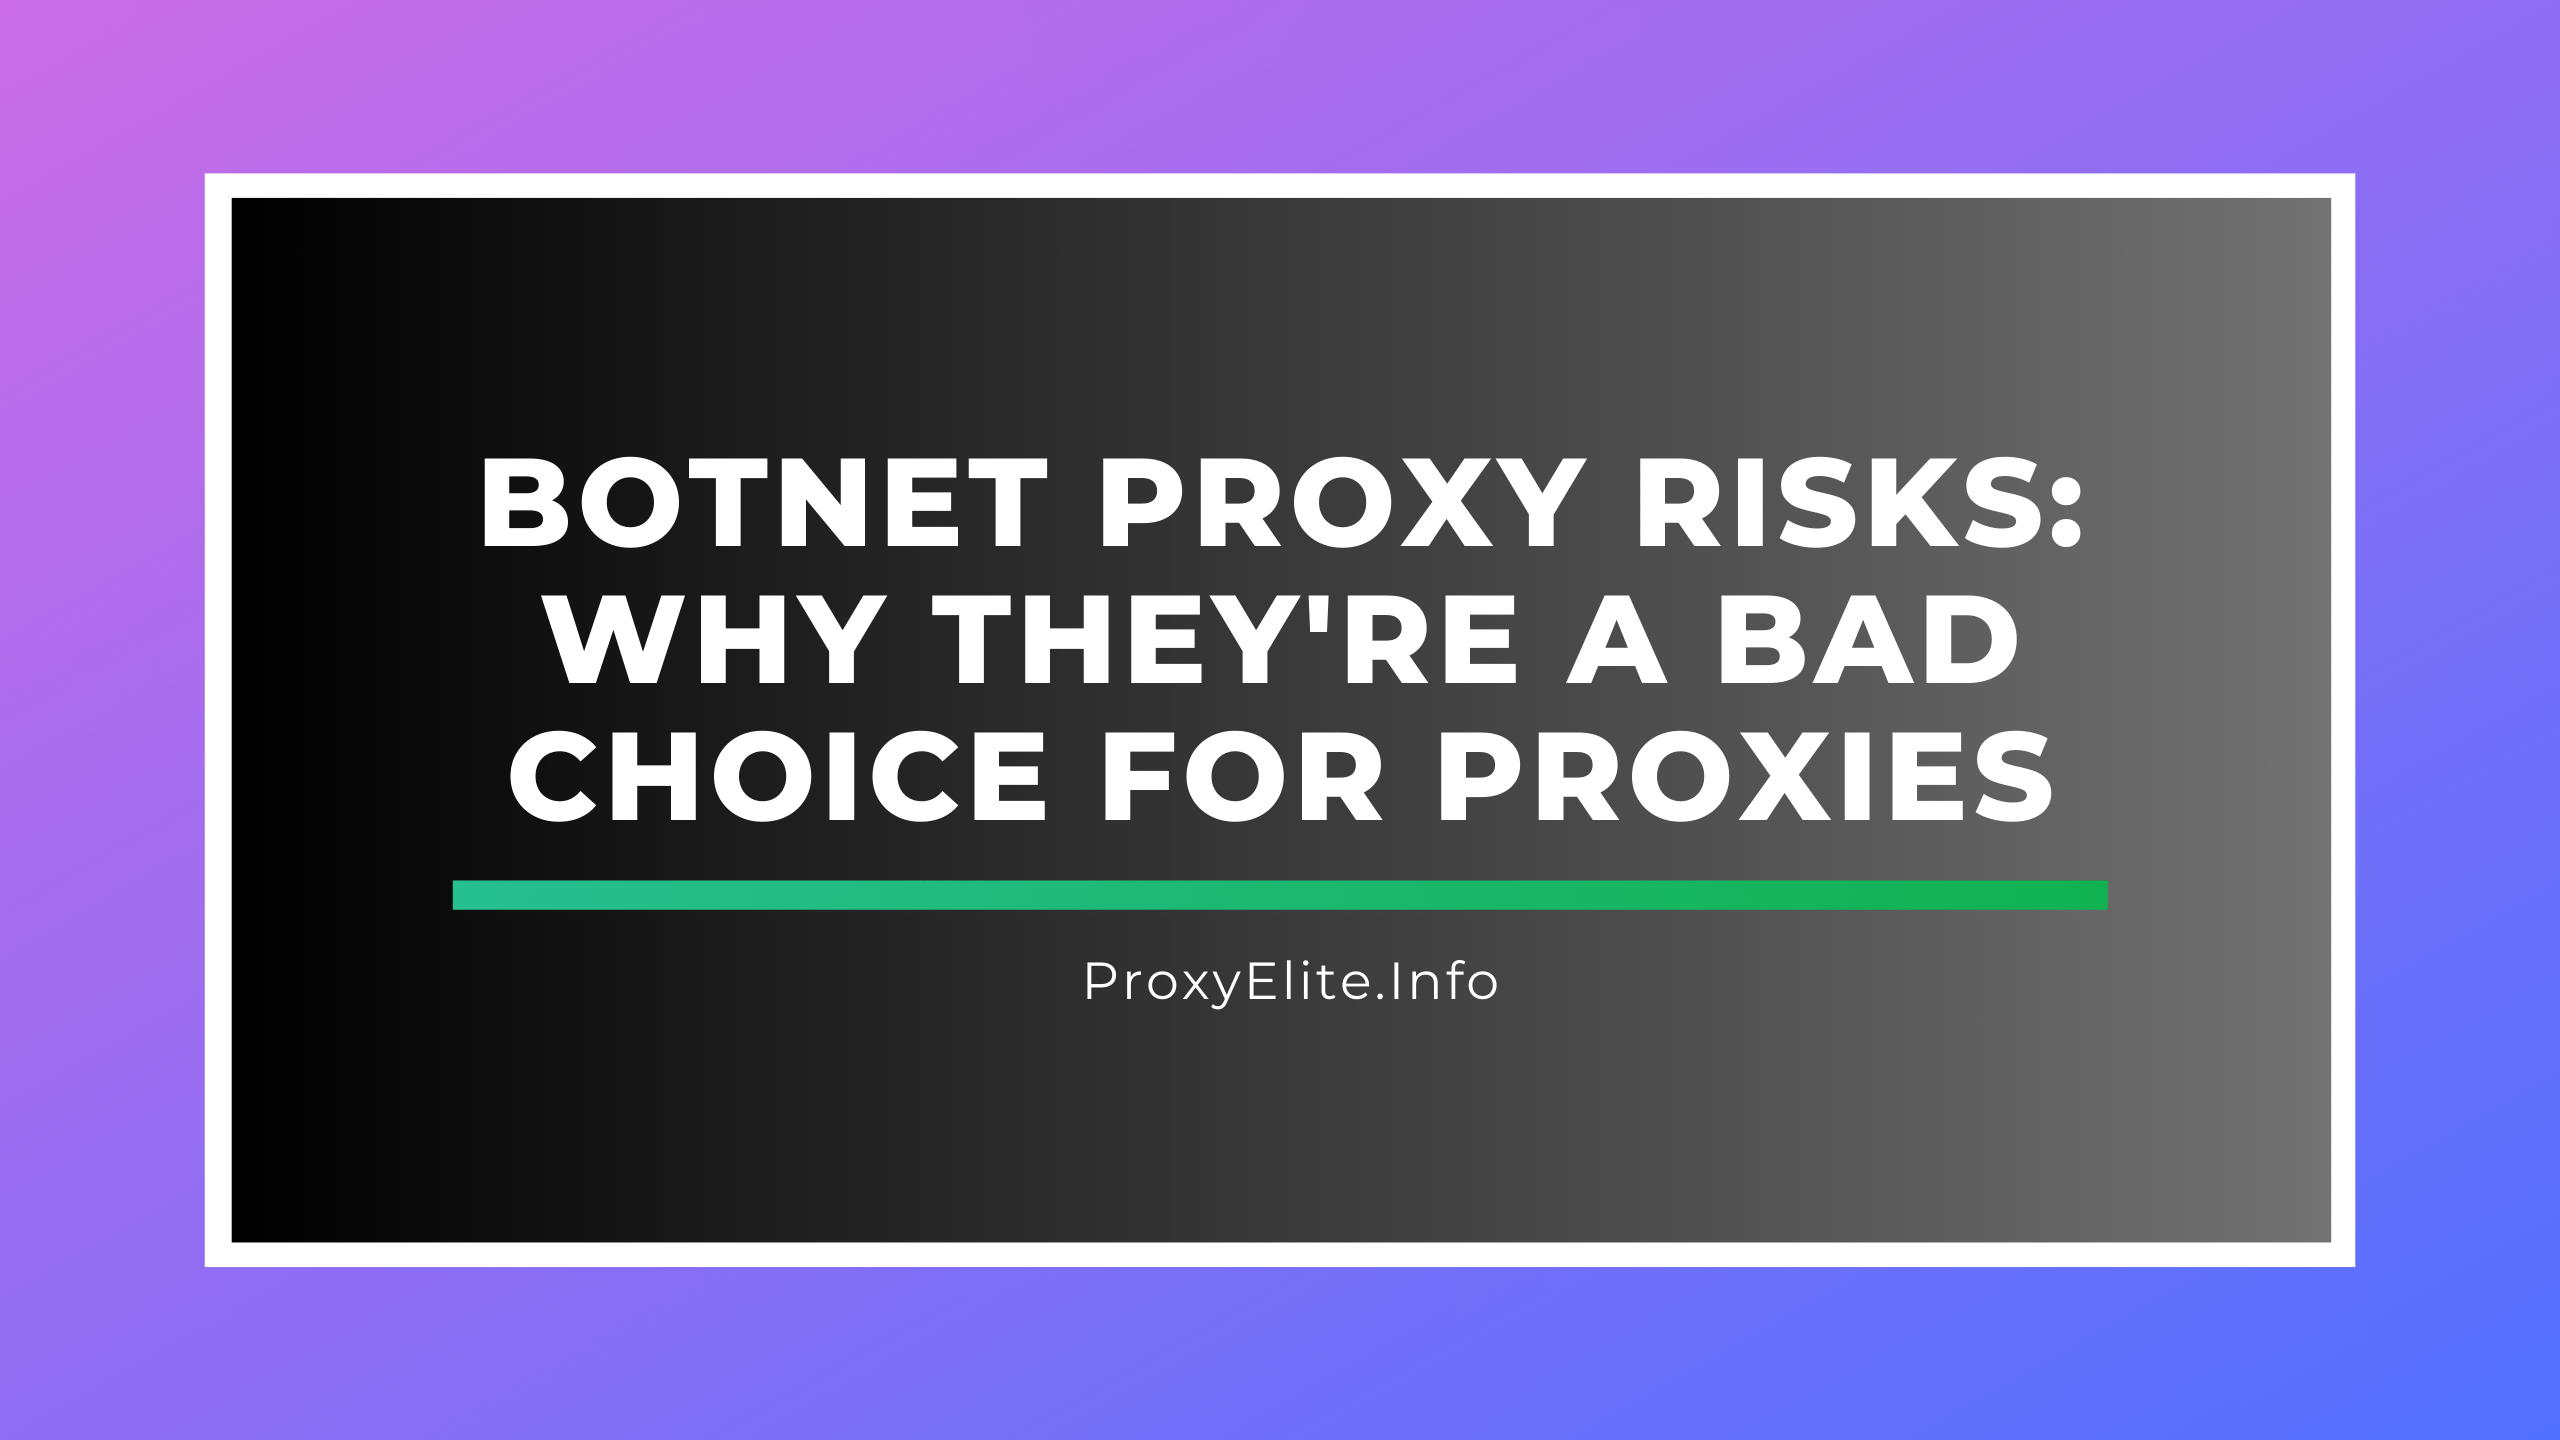 Риски прокси-серверов ботнетов: почему это плохой выбор для прокси-серверов